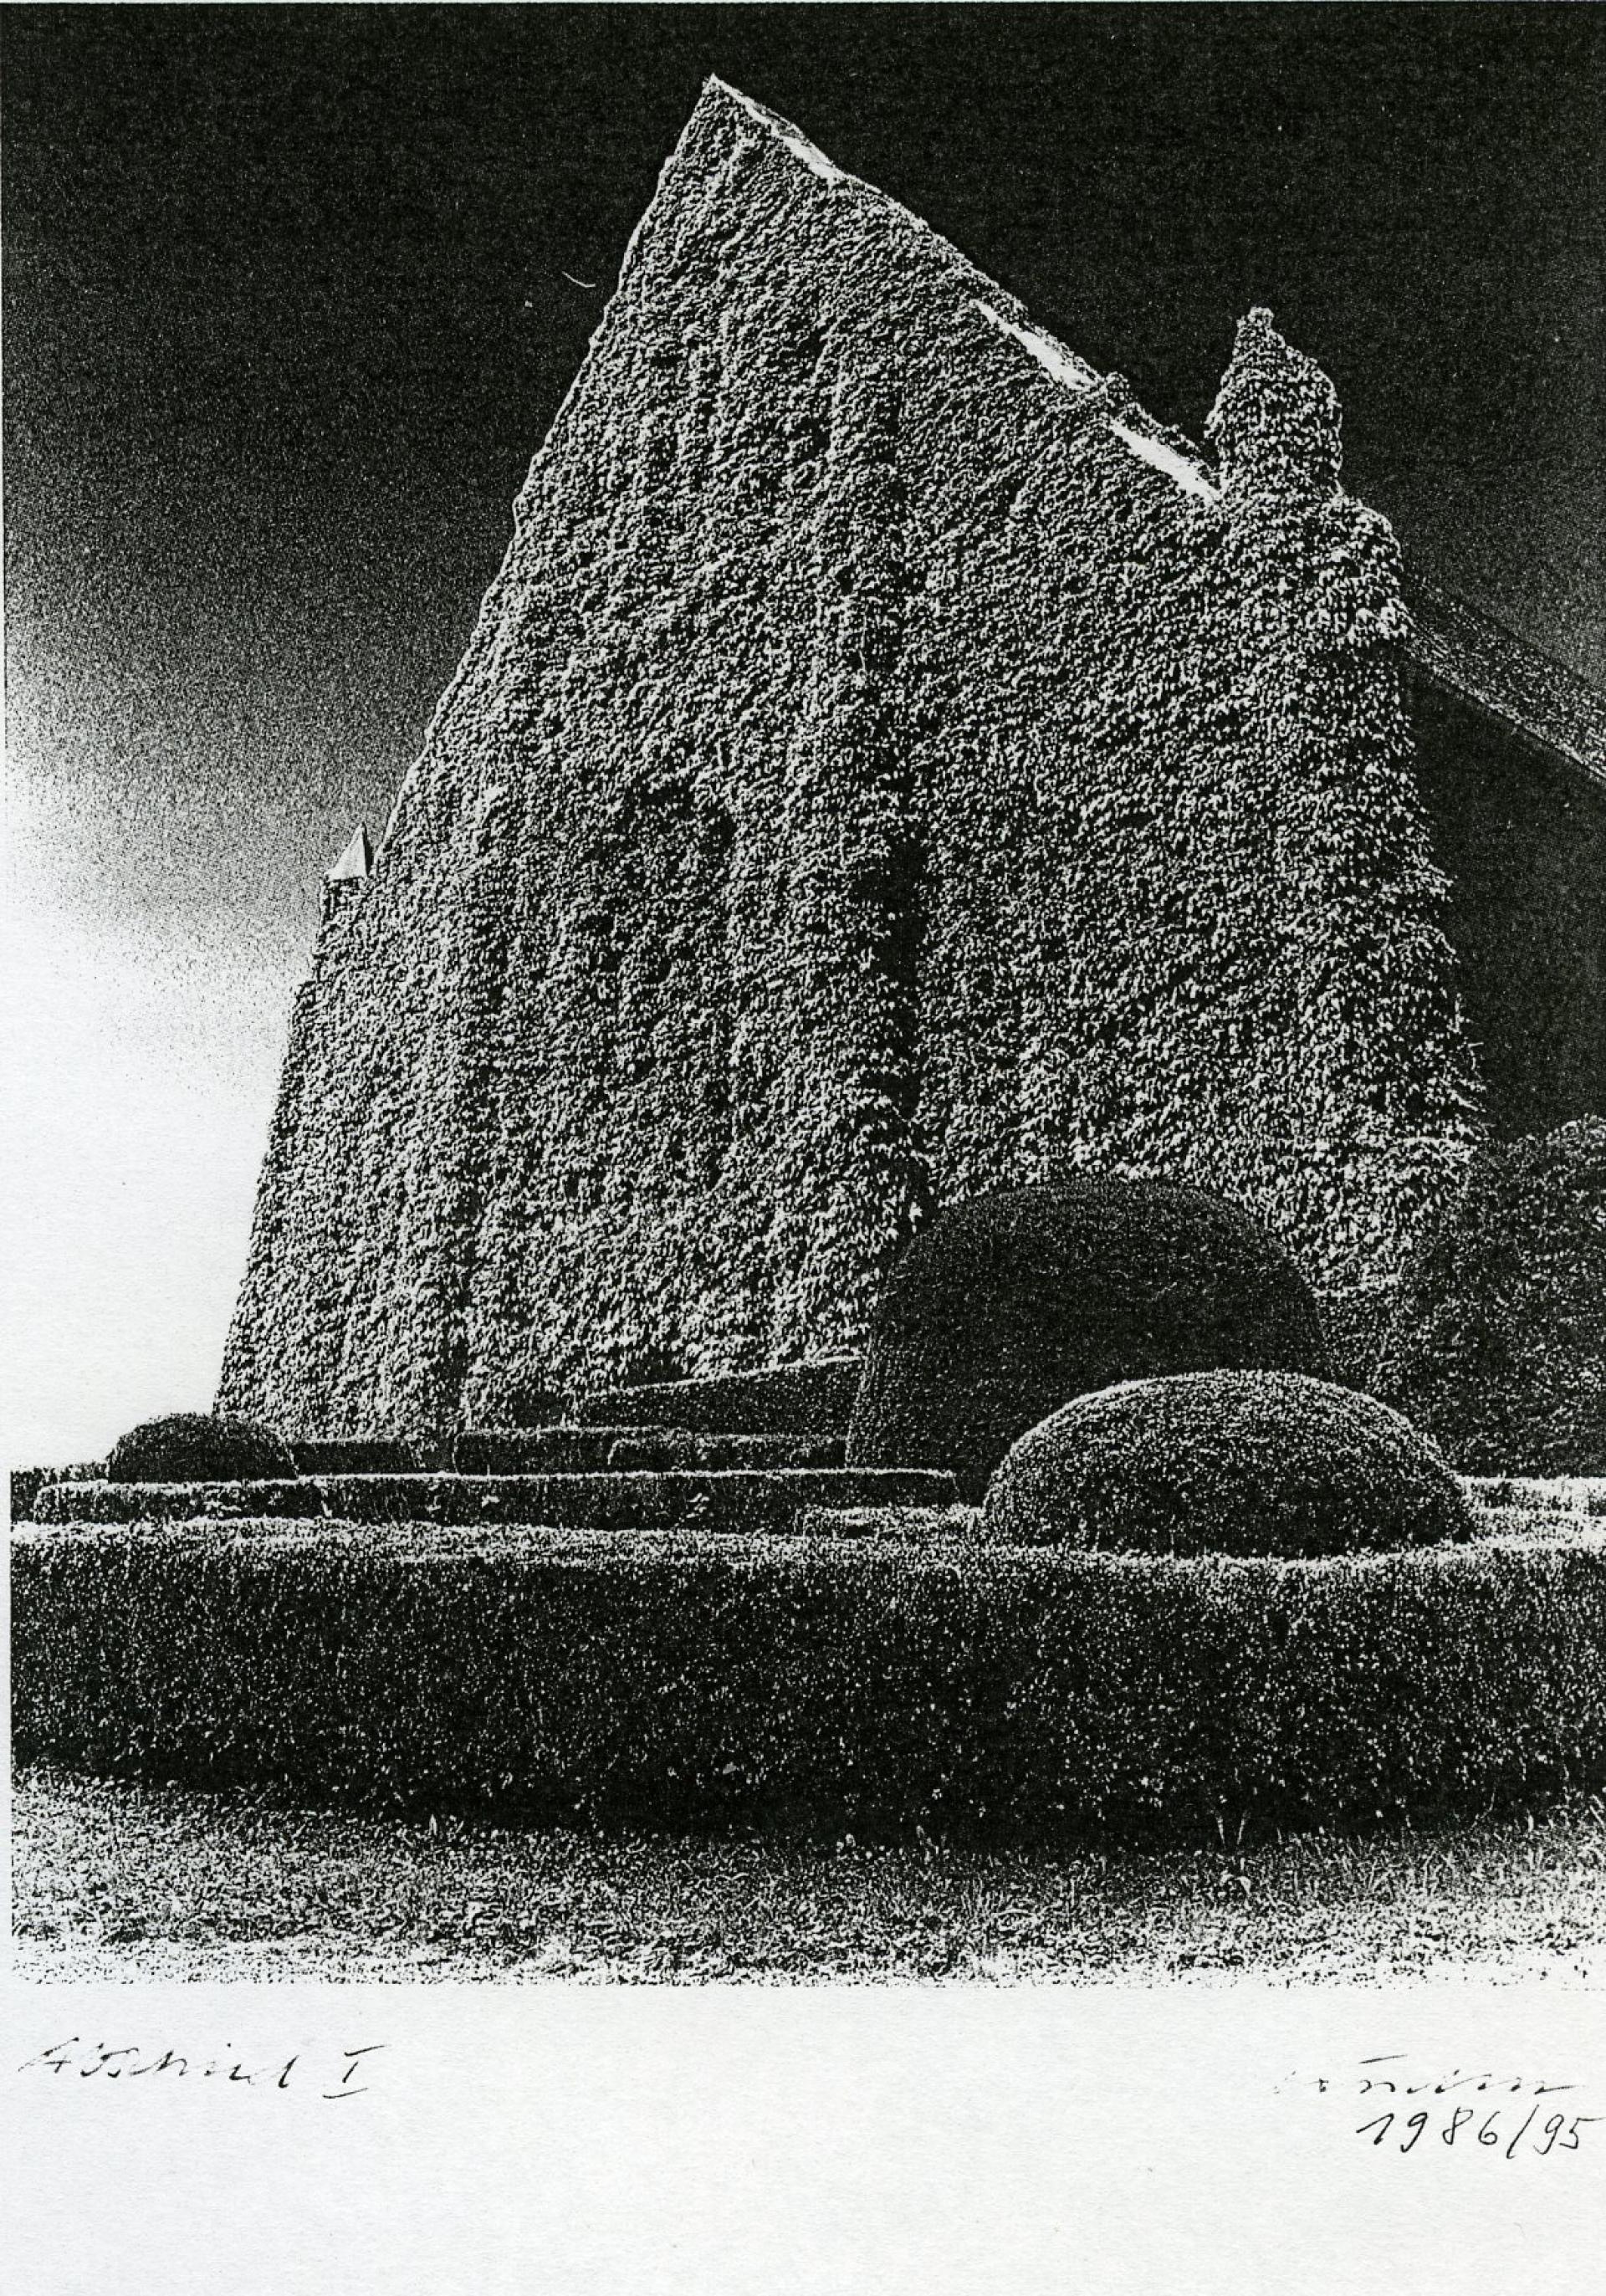 schwarz-weiß Fotographie einer großen , komplett zugewachsenen Hausfassade mit Spitzgiebeldach. Davor gepflegte Zierbüsche.